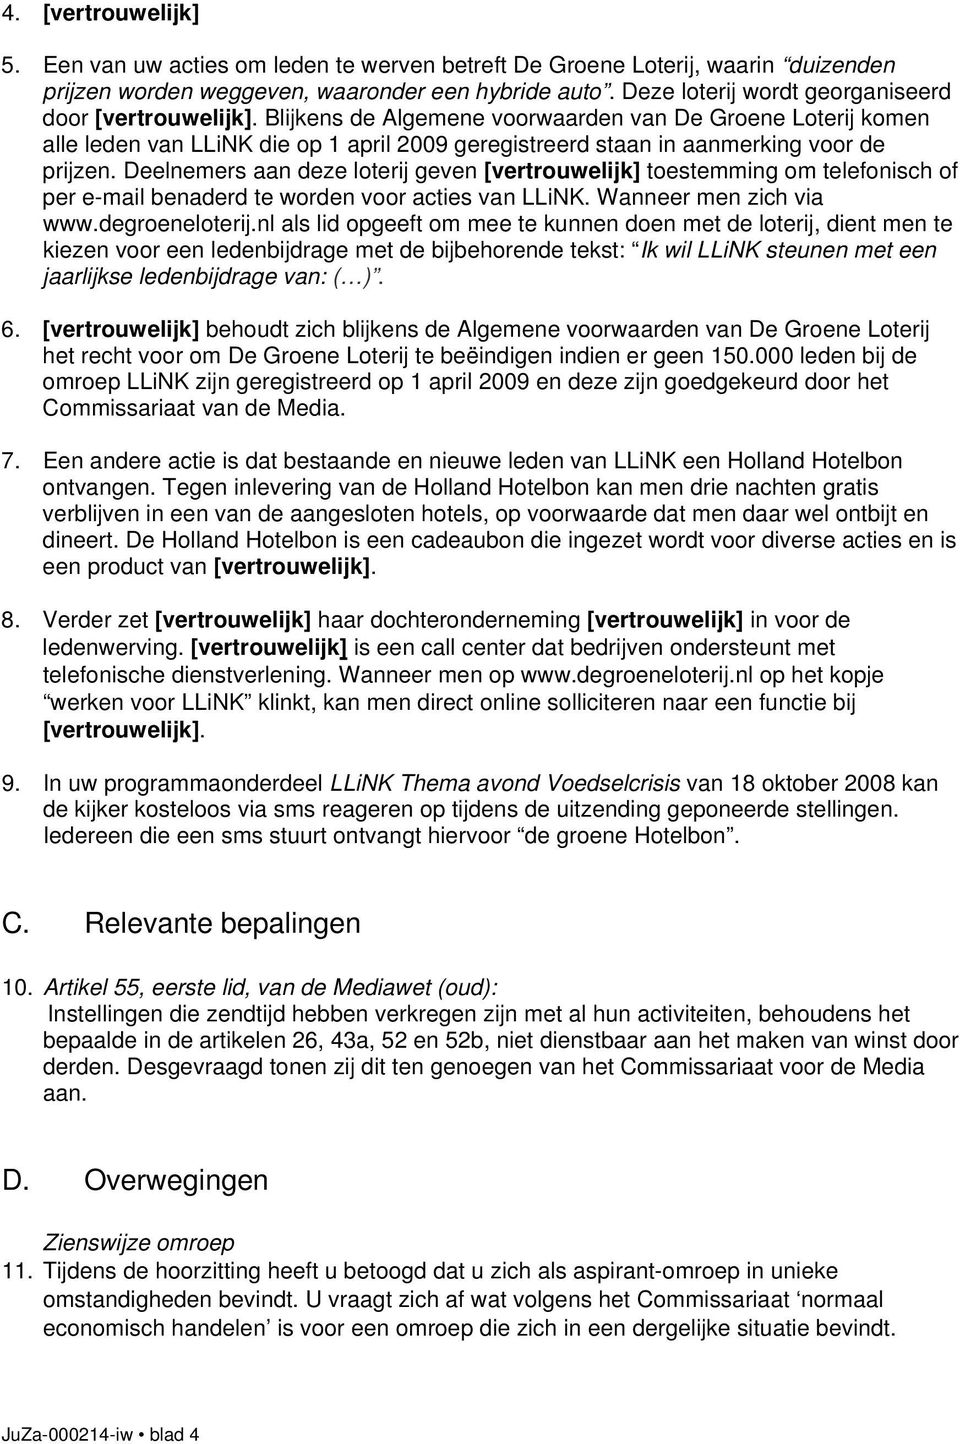 Blijkens de Algemene voorwaarden van De Groene Loterij komen alle leden van LLiNK die op 1 april 2009 geregistreerd staan in aanmerking voor de prijzen.